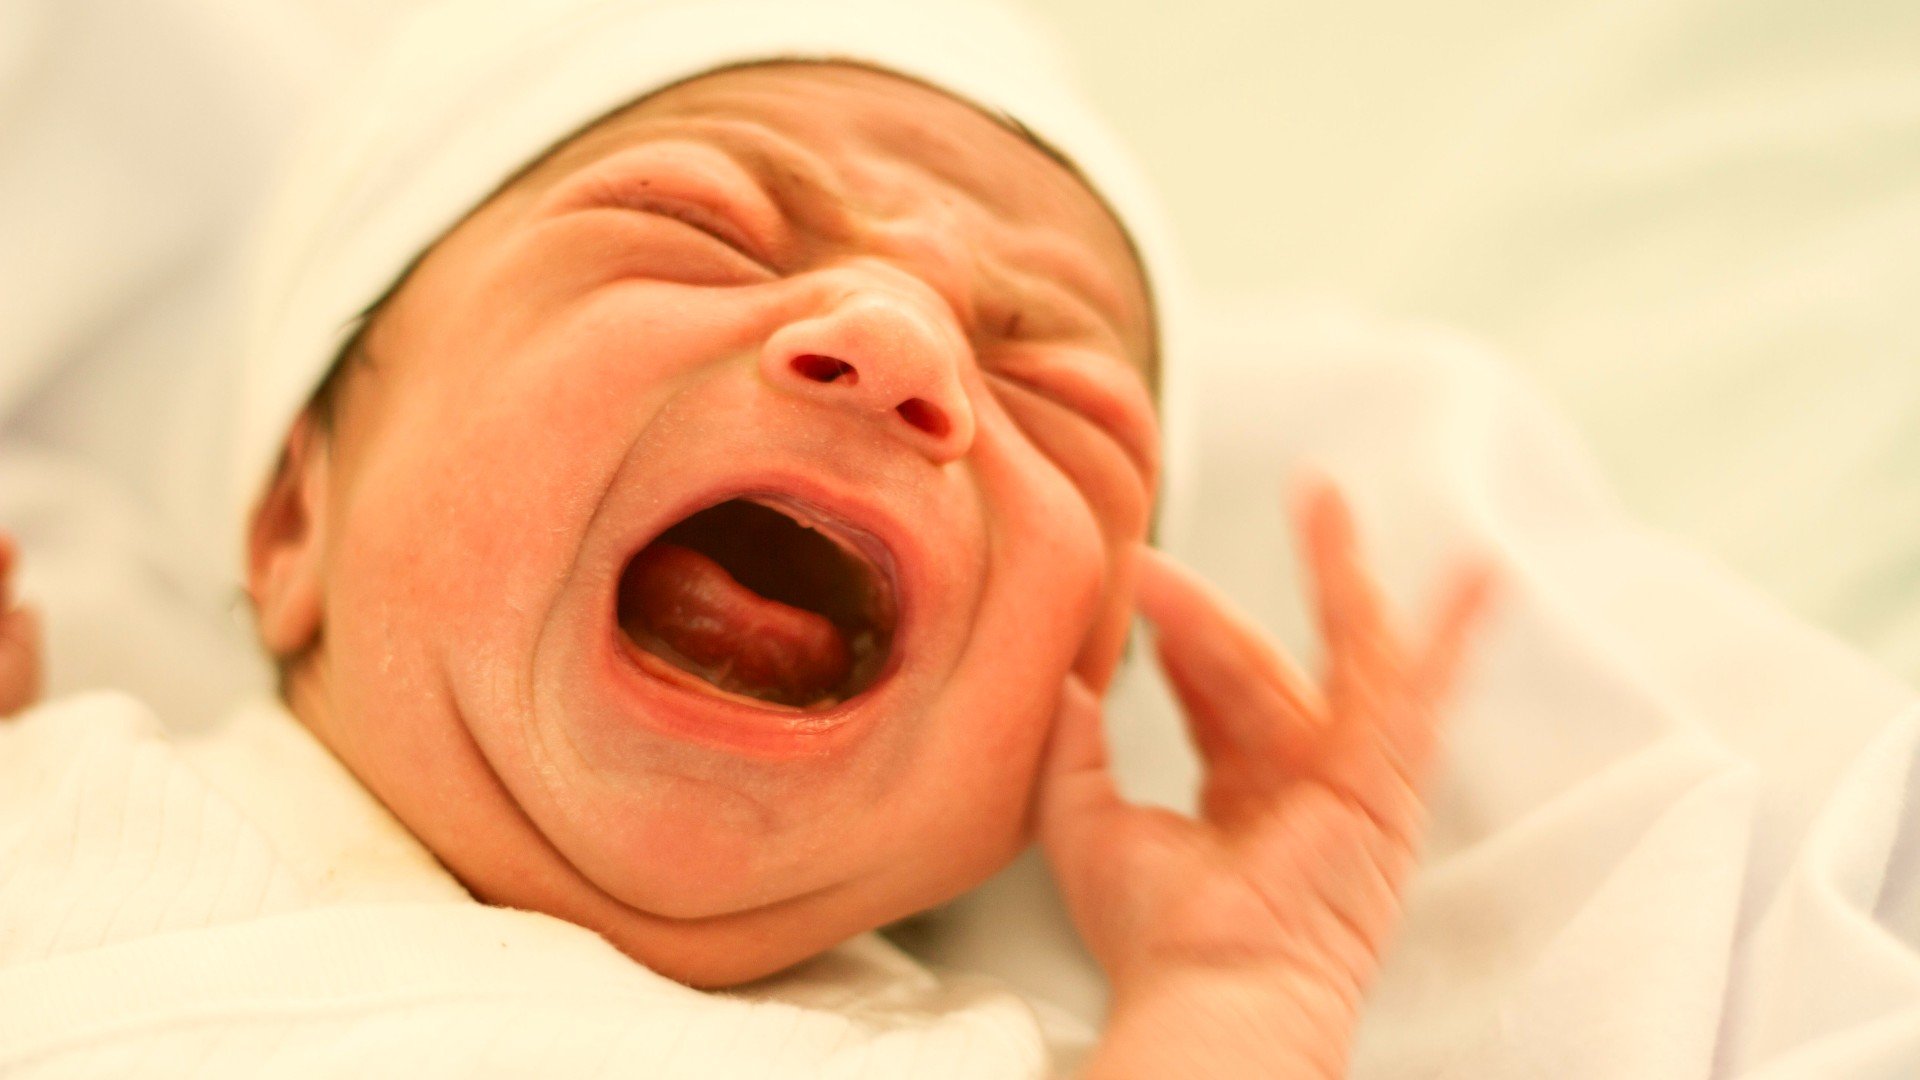 Foto de capa do artigo "Icterícia neonatal: saiba quando a doença é grave"